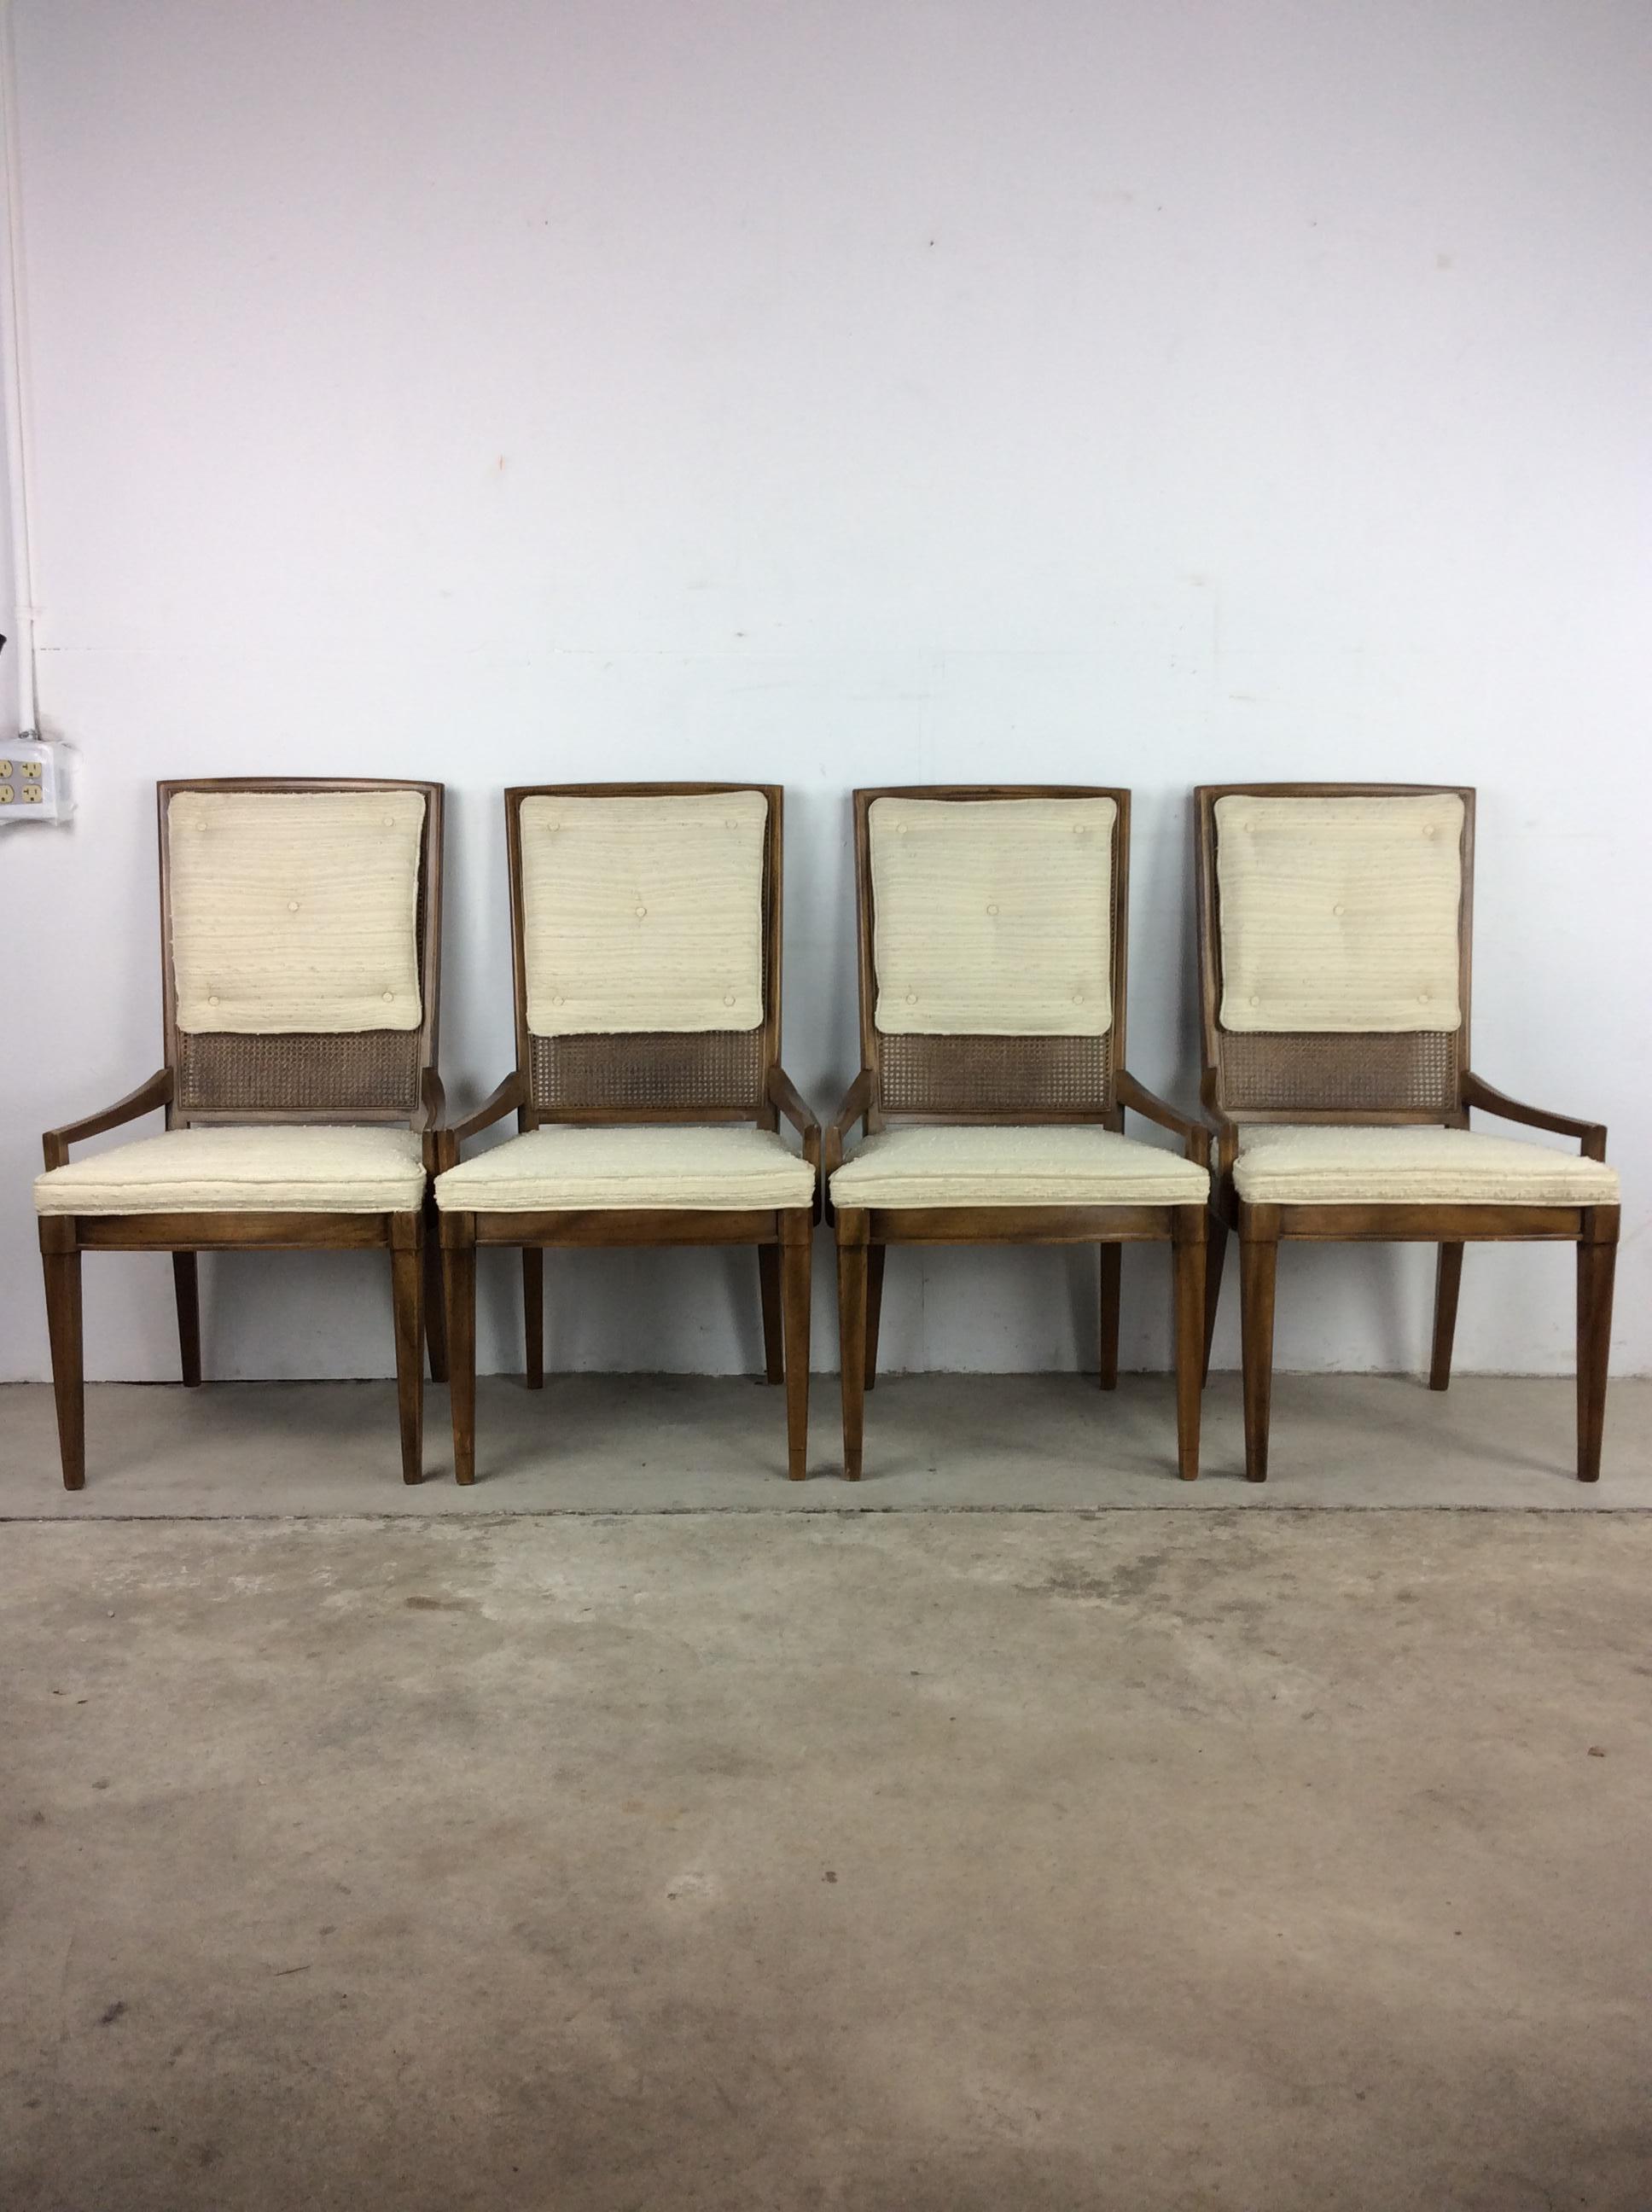 Dieses Set aus vier Esszimmerstühlen aus der Mitte des Jahrhunderts zeichnet sich durch eine Hartholzkonstruktion, einzigartige niedrige Armlehnen, eine weiße Polsterung im Vintage-Stil auf den Sitzen und der Rückenlehne, Rohrleitungen unter den